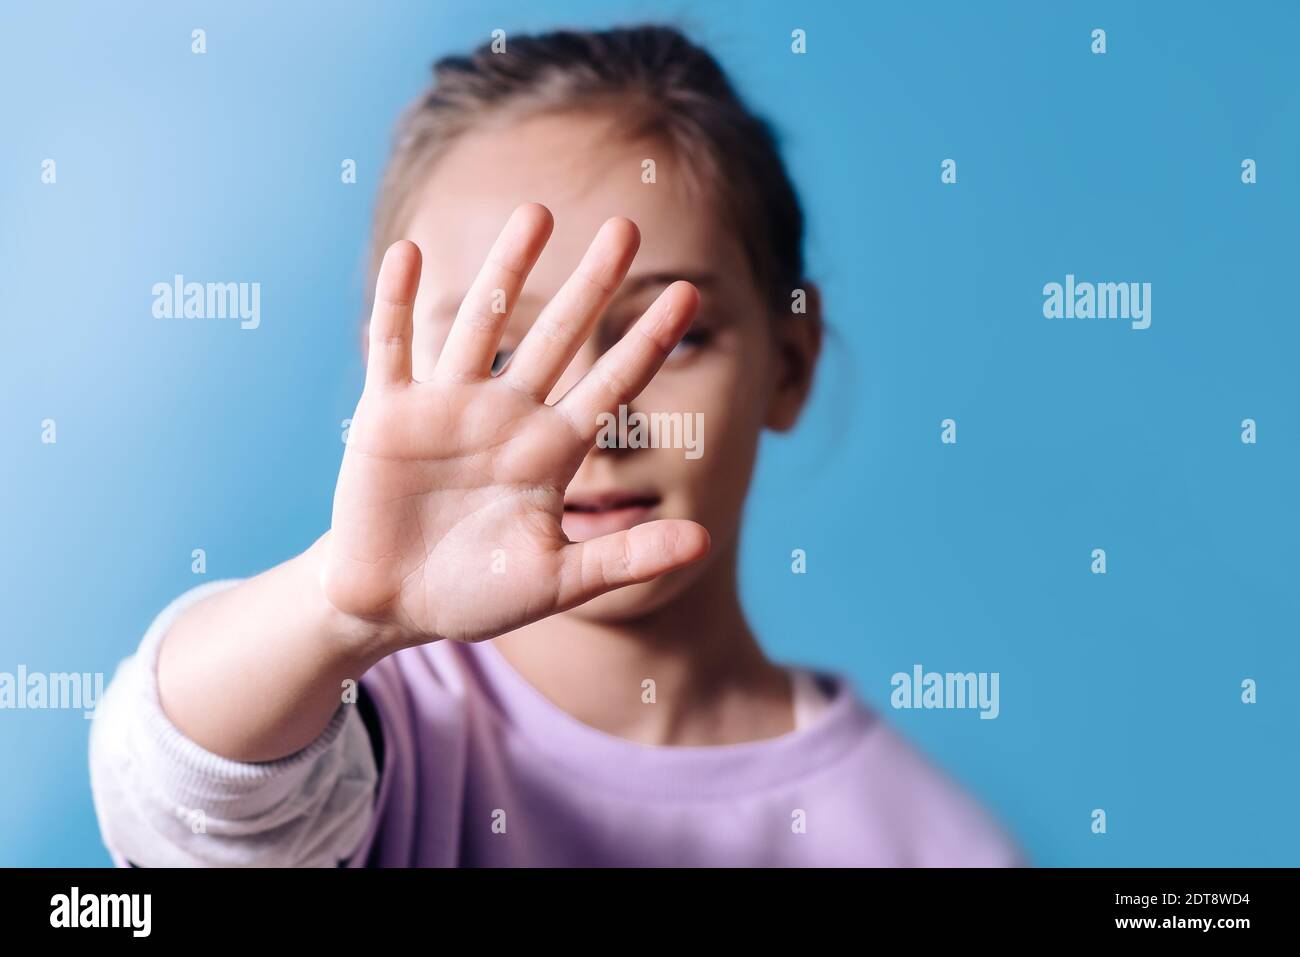 Signe de protestation.fille avec main devant le visage avec un geste d'arrêt sur fond bleu. Copier l'espace Banque D'Images